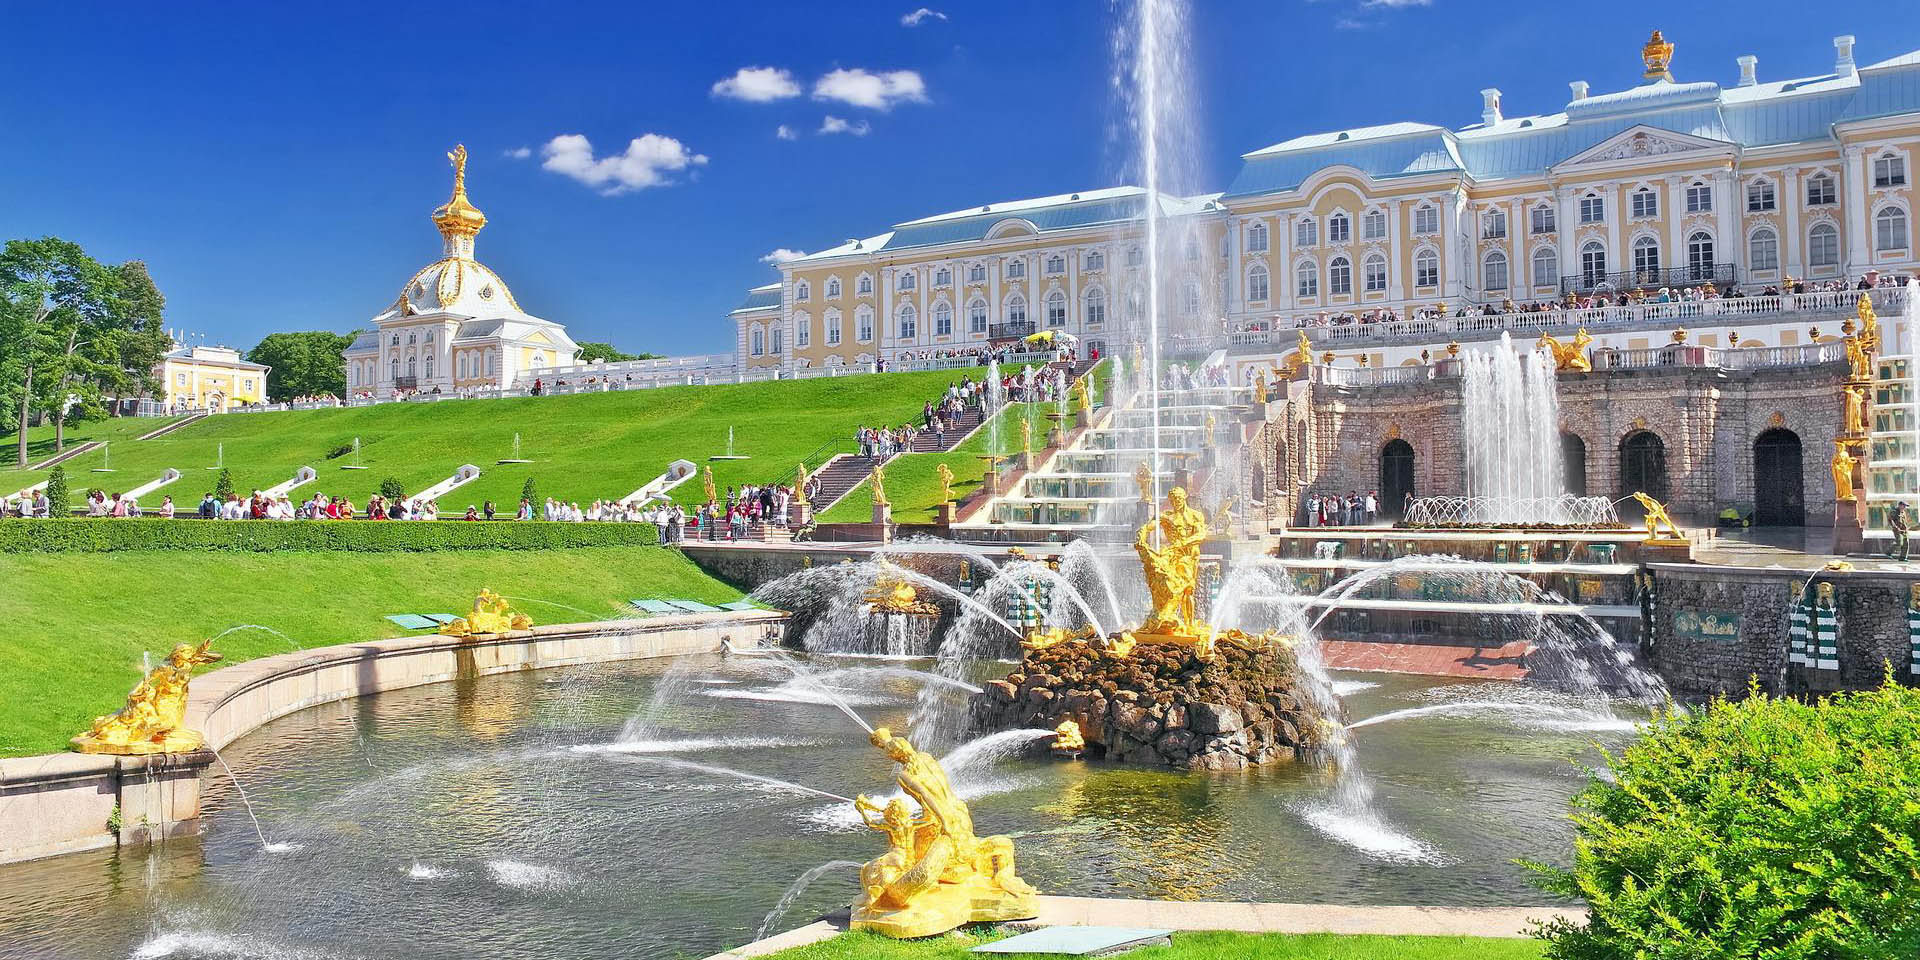 Du lịch mùa hè khám phá Peterhof "Cung điện mùa hè" lộng lẫy nước Nga